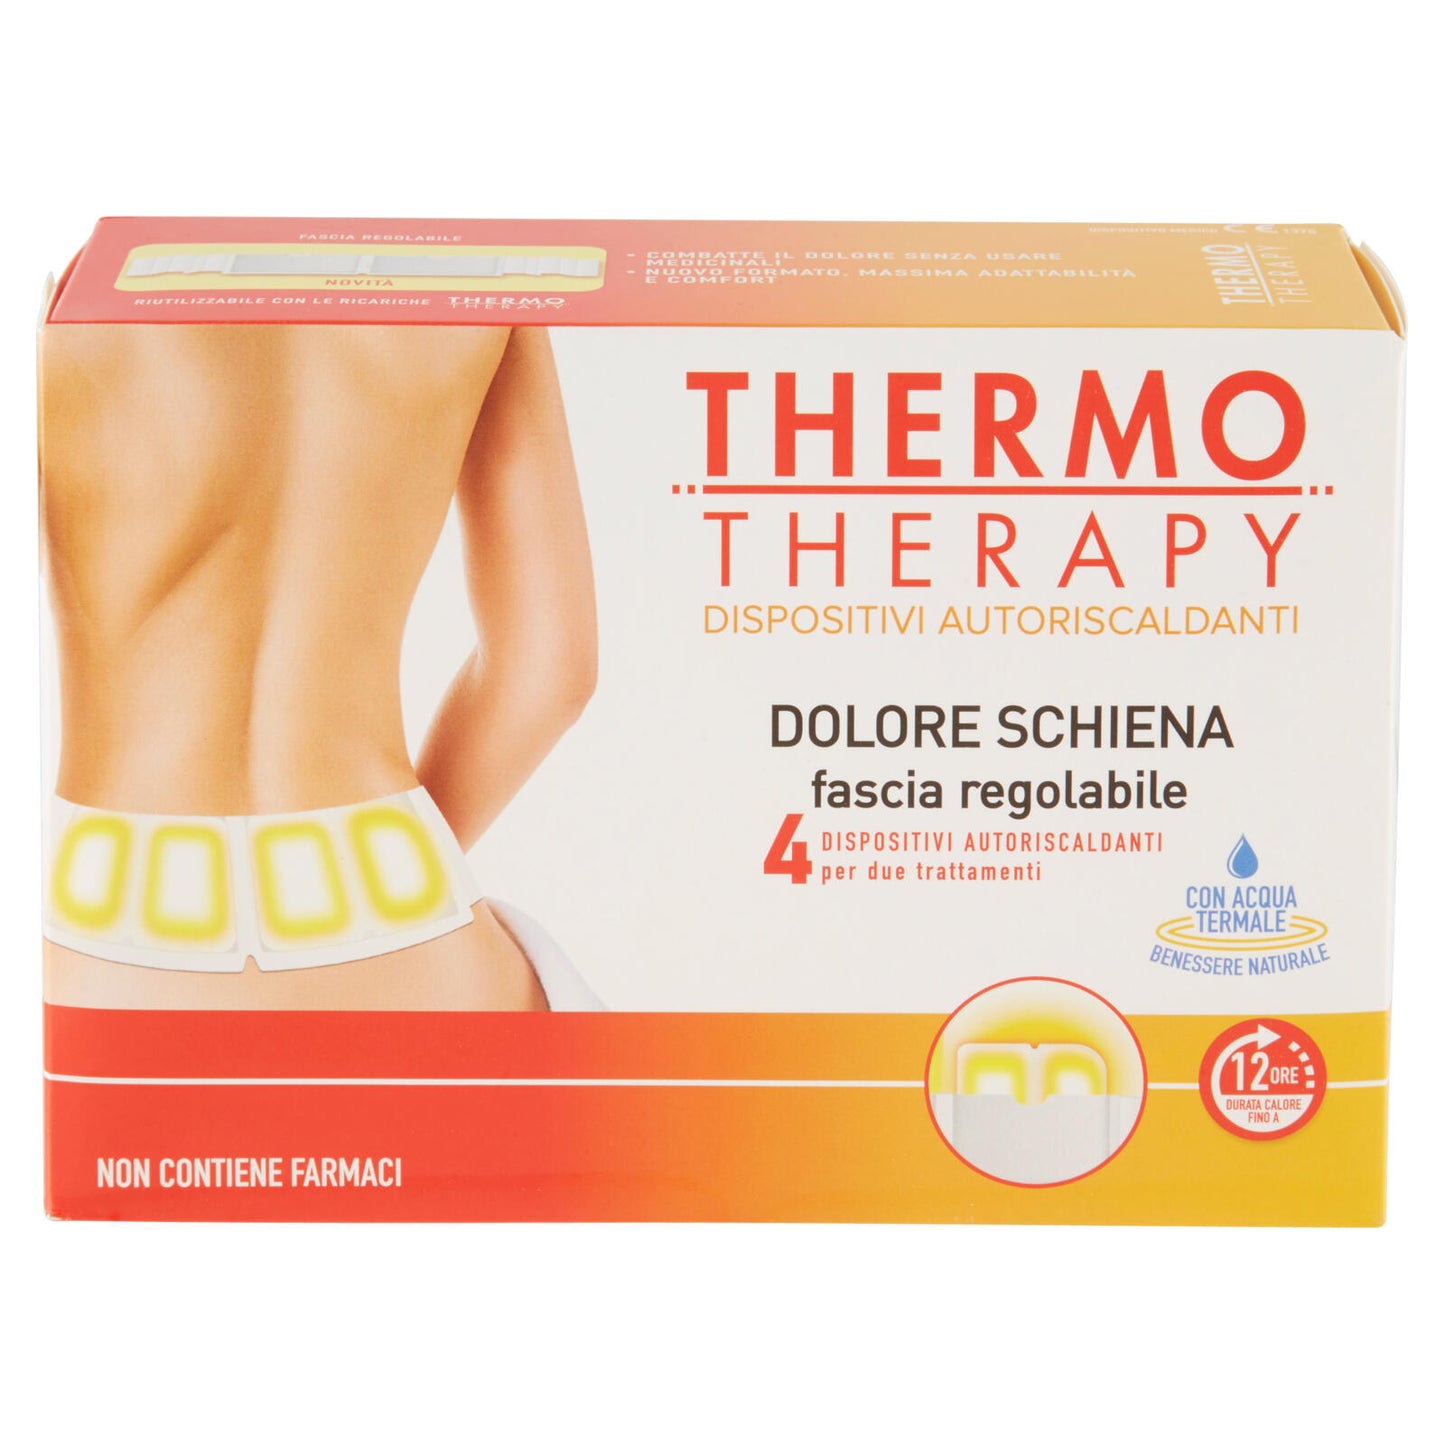 ThermoTherapy Dolore Schiena fascia regolabile